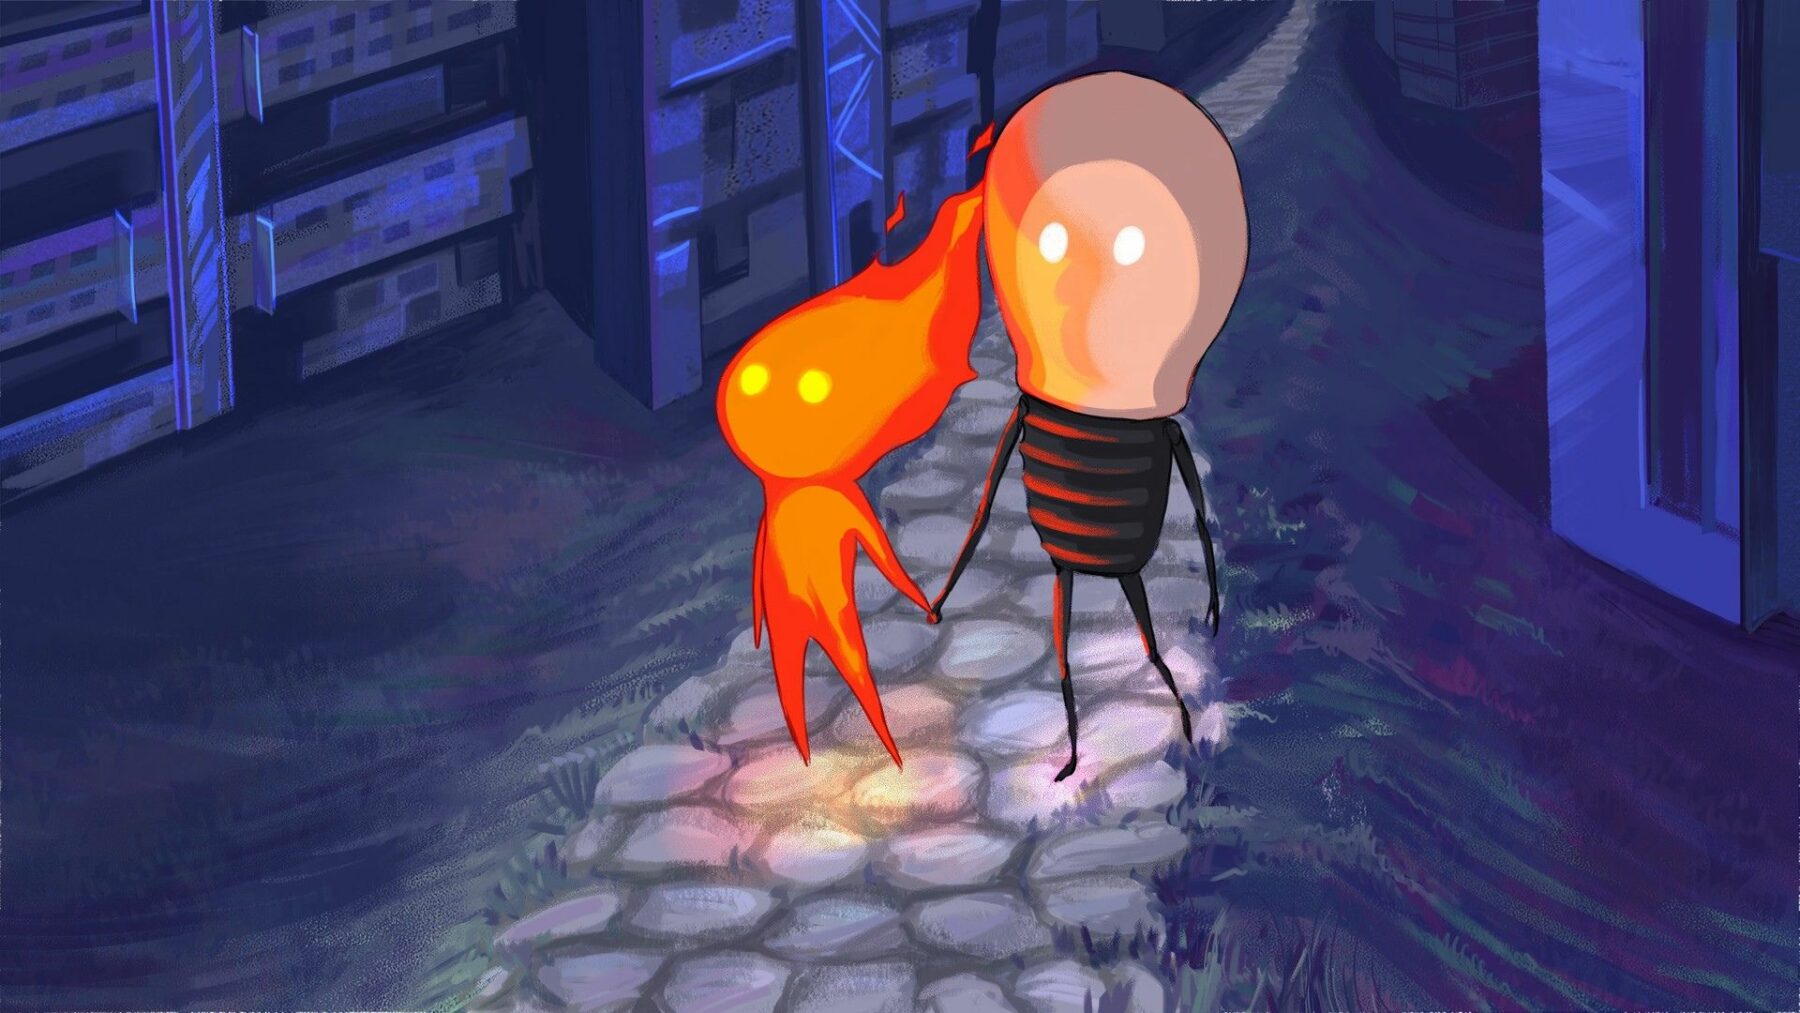 Kadr z animacji z postacią chłopięcą w towarzystwie płomienia.